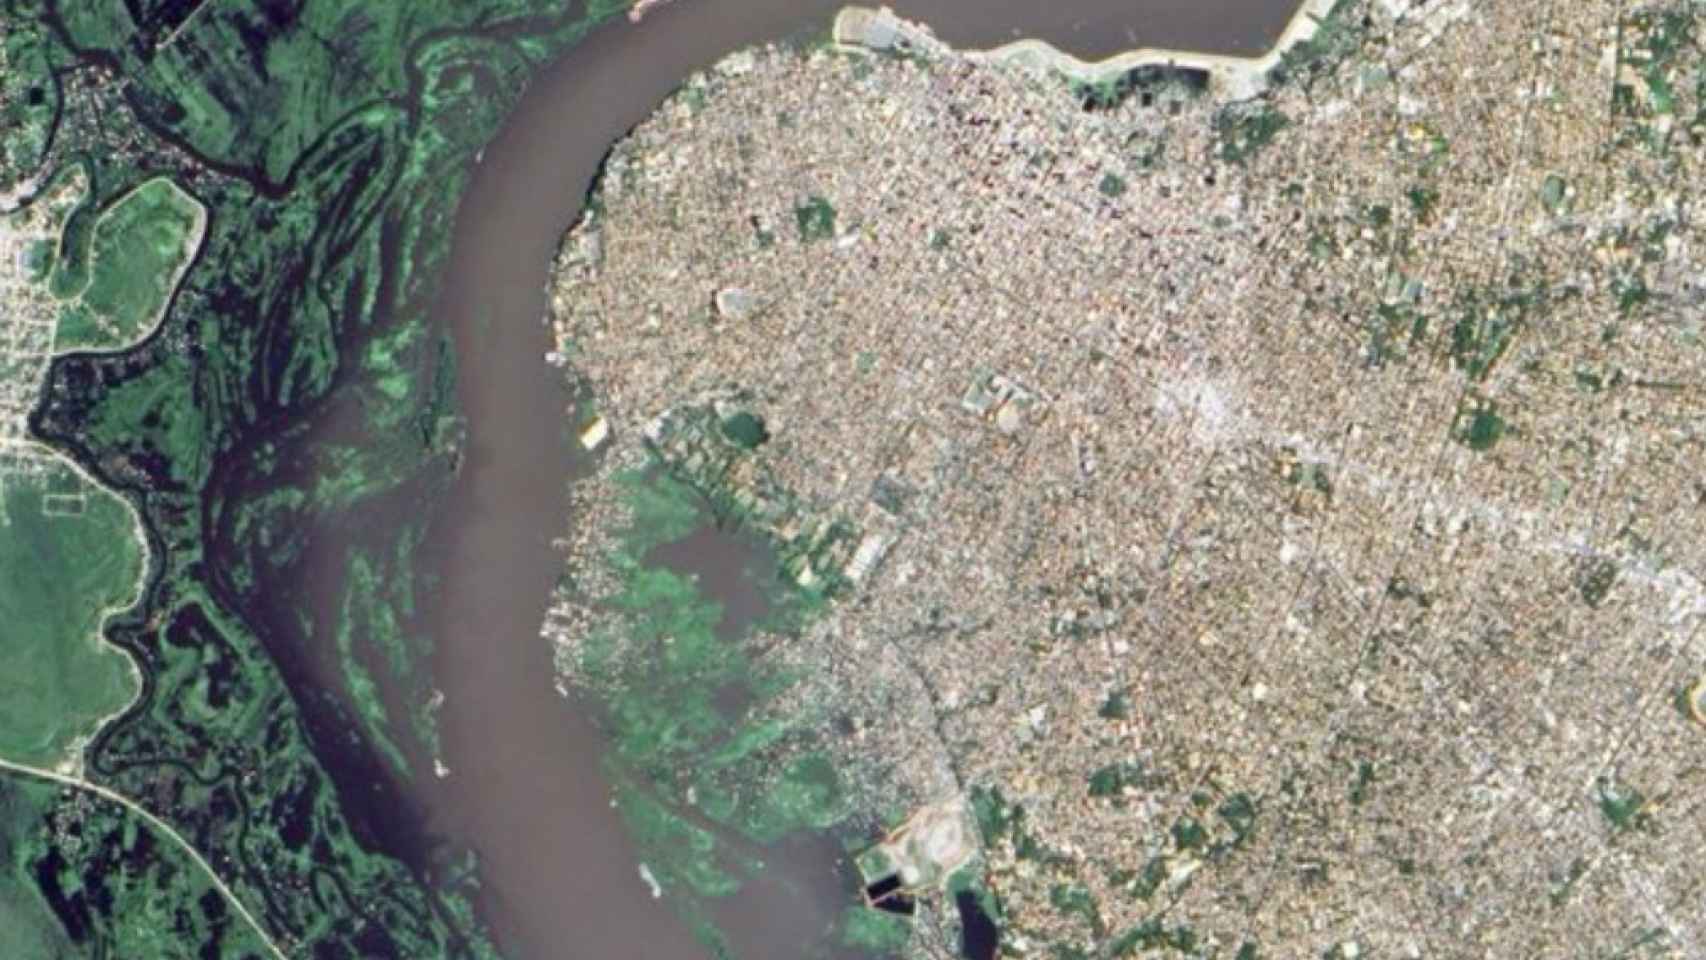 Inundación en la capital de Paraguay, Asunción, por el rio Paraguay